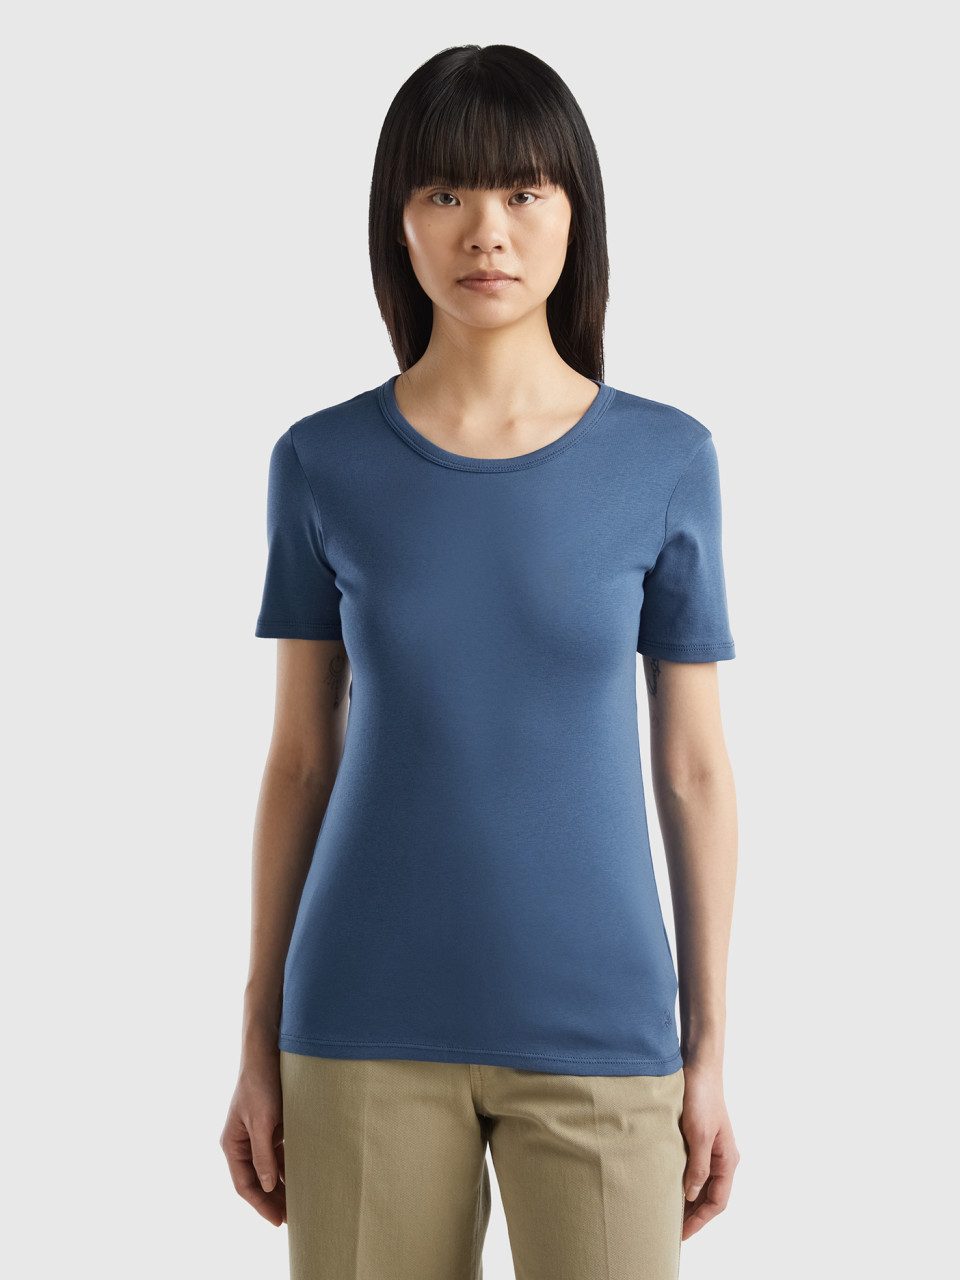 Benetton, Long Fiber Cotton T-shirt, Air Force Blue, Women